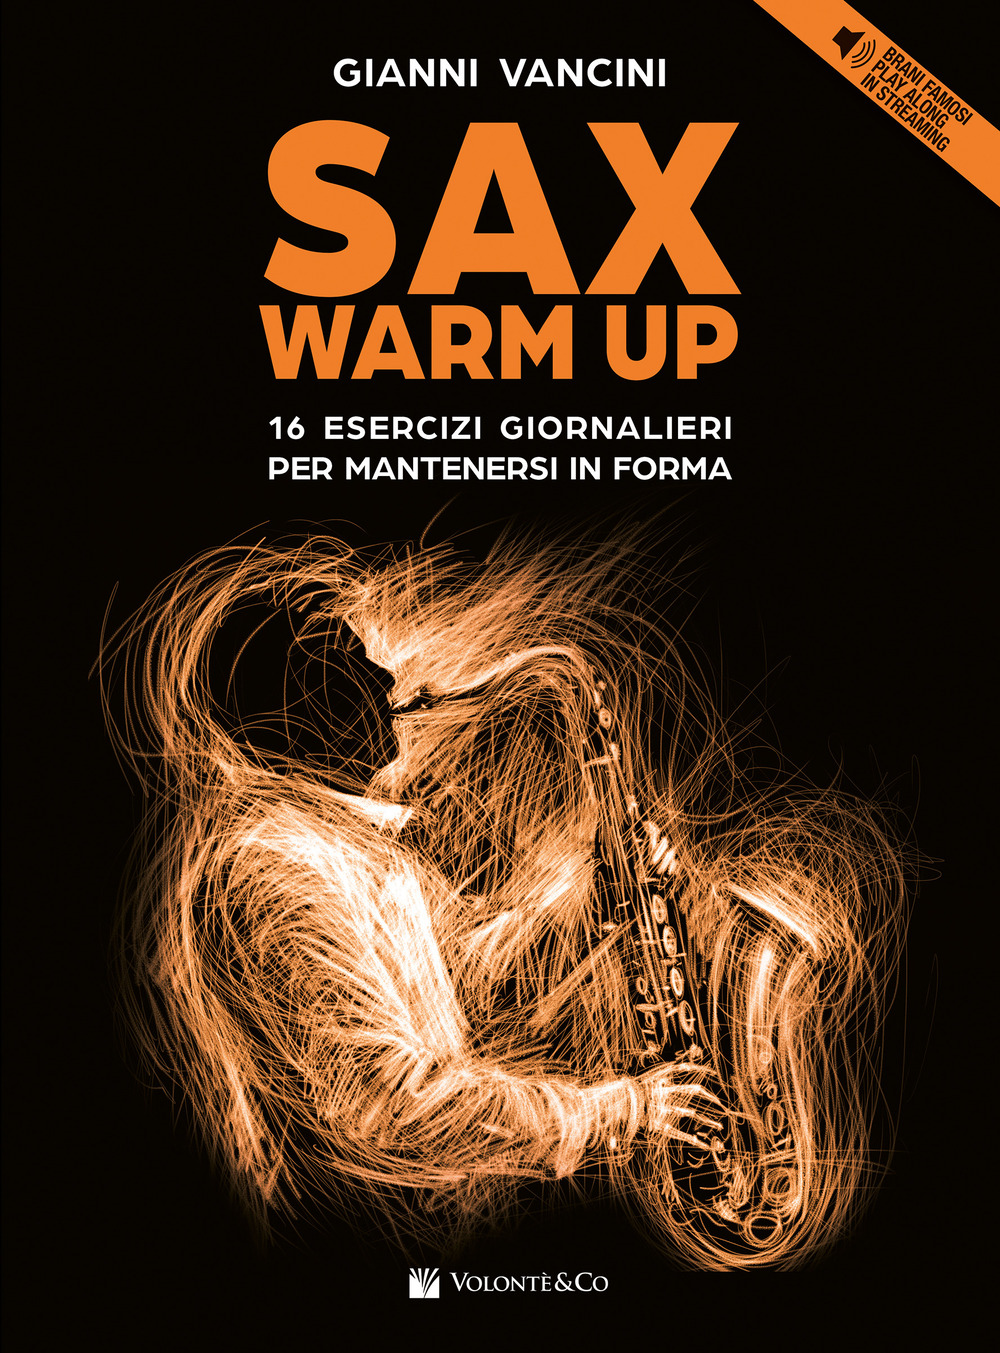 Sax warm up. 16 esercizi giornalieri per mantenersi in forma con brani famosi play along in streaming. Con File audio online